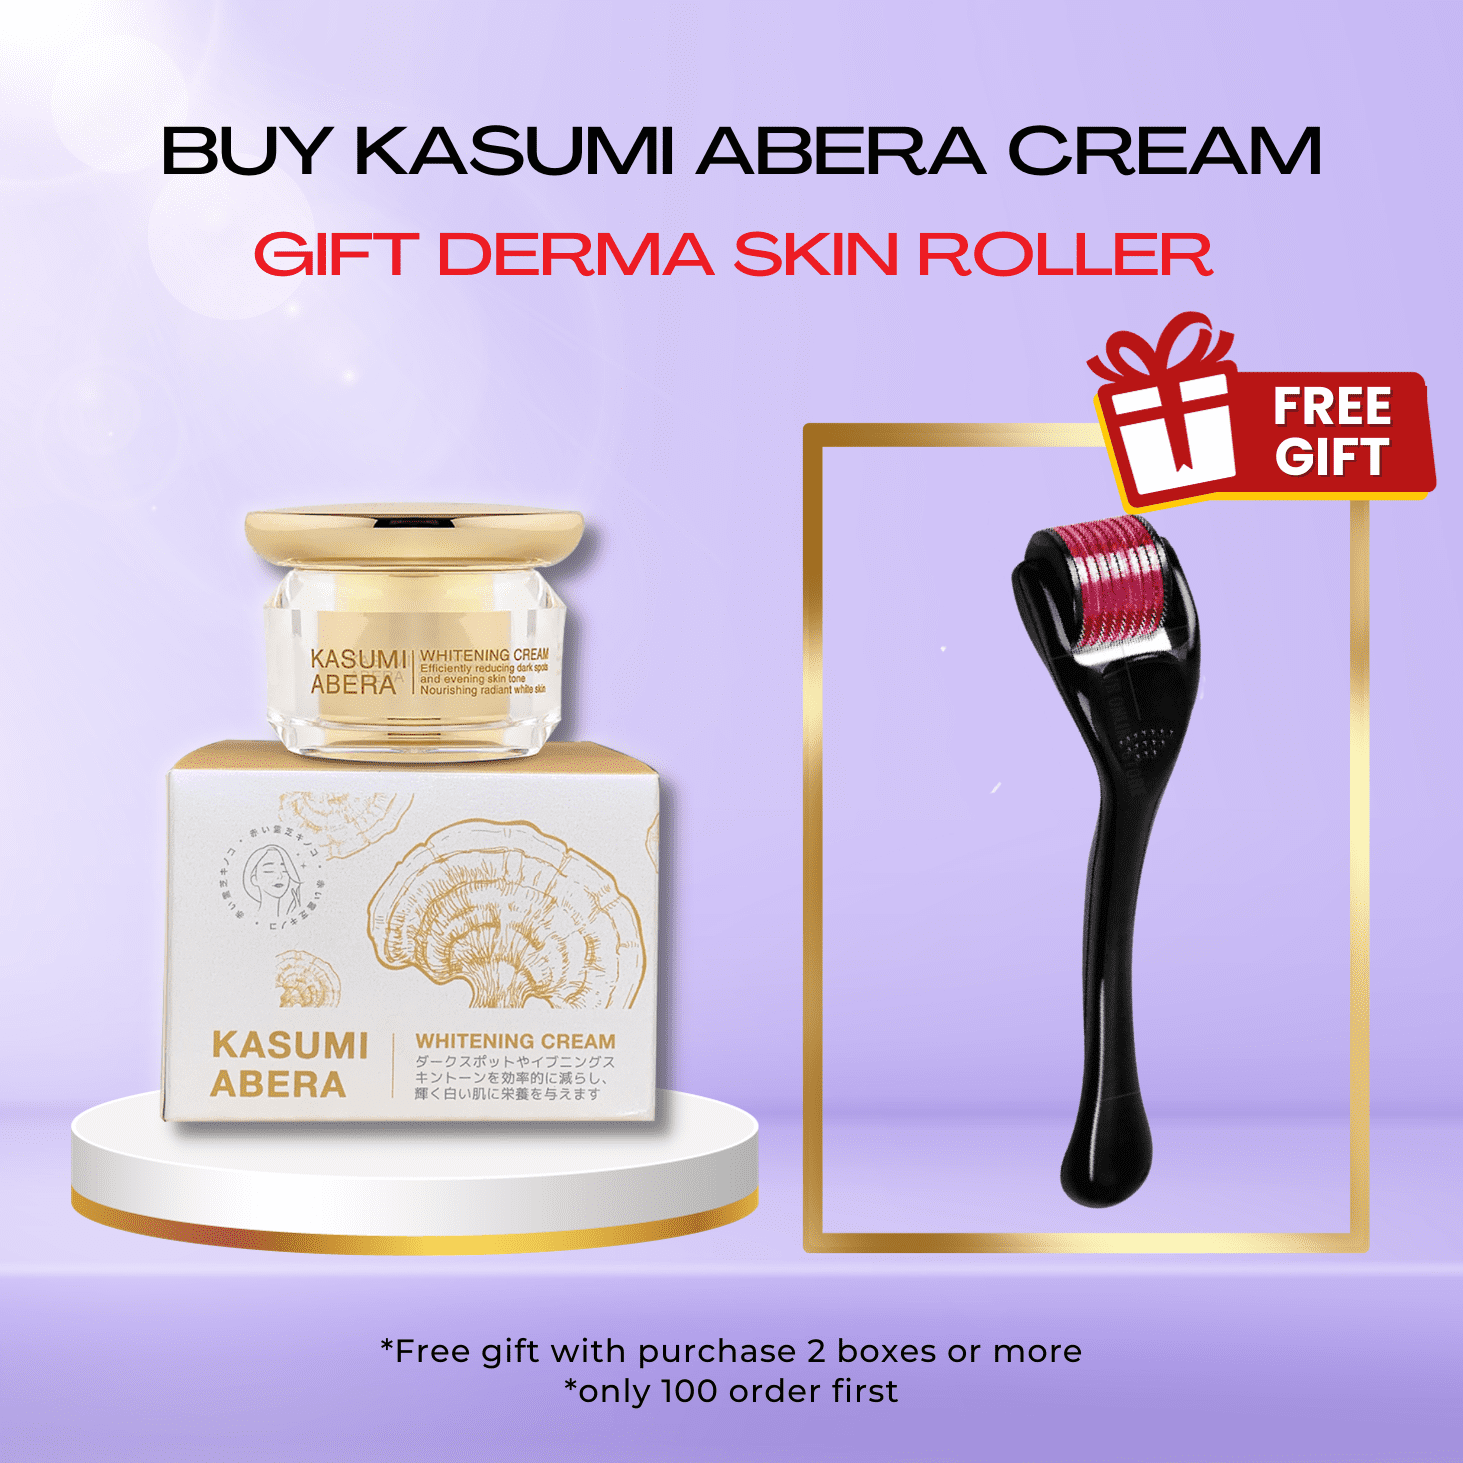 [SALE OFF 50%] Kasumi Abera Cream Official – GIFT Derma Roller